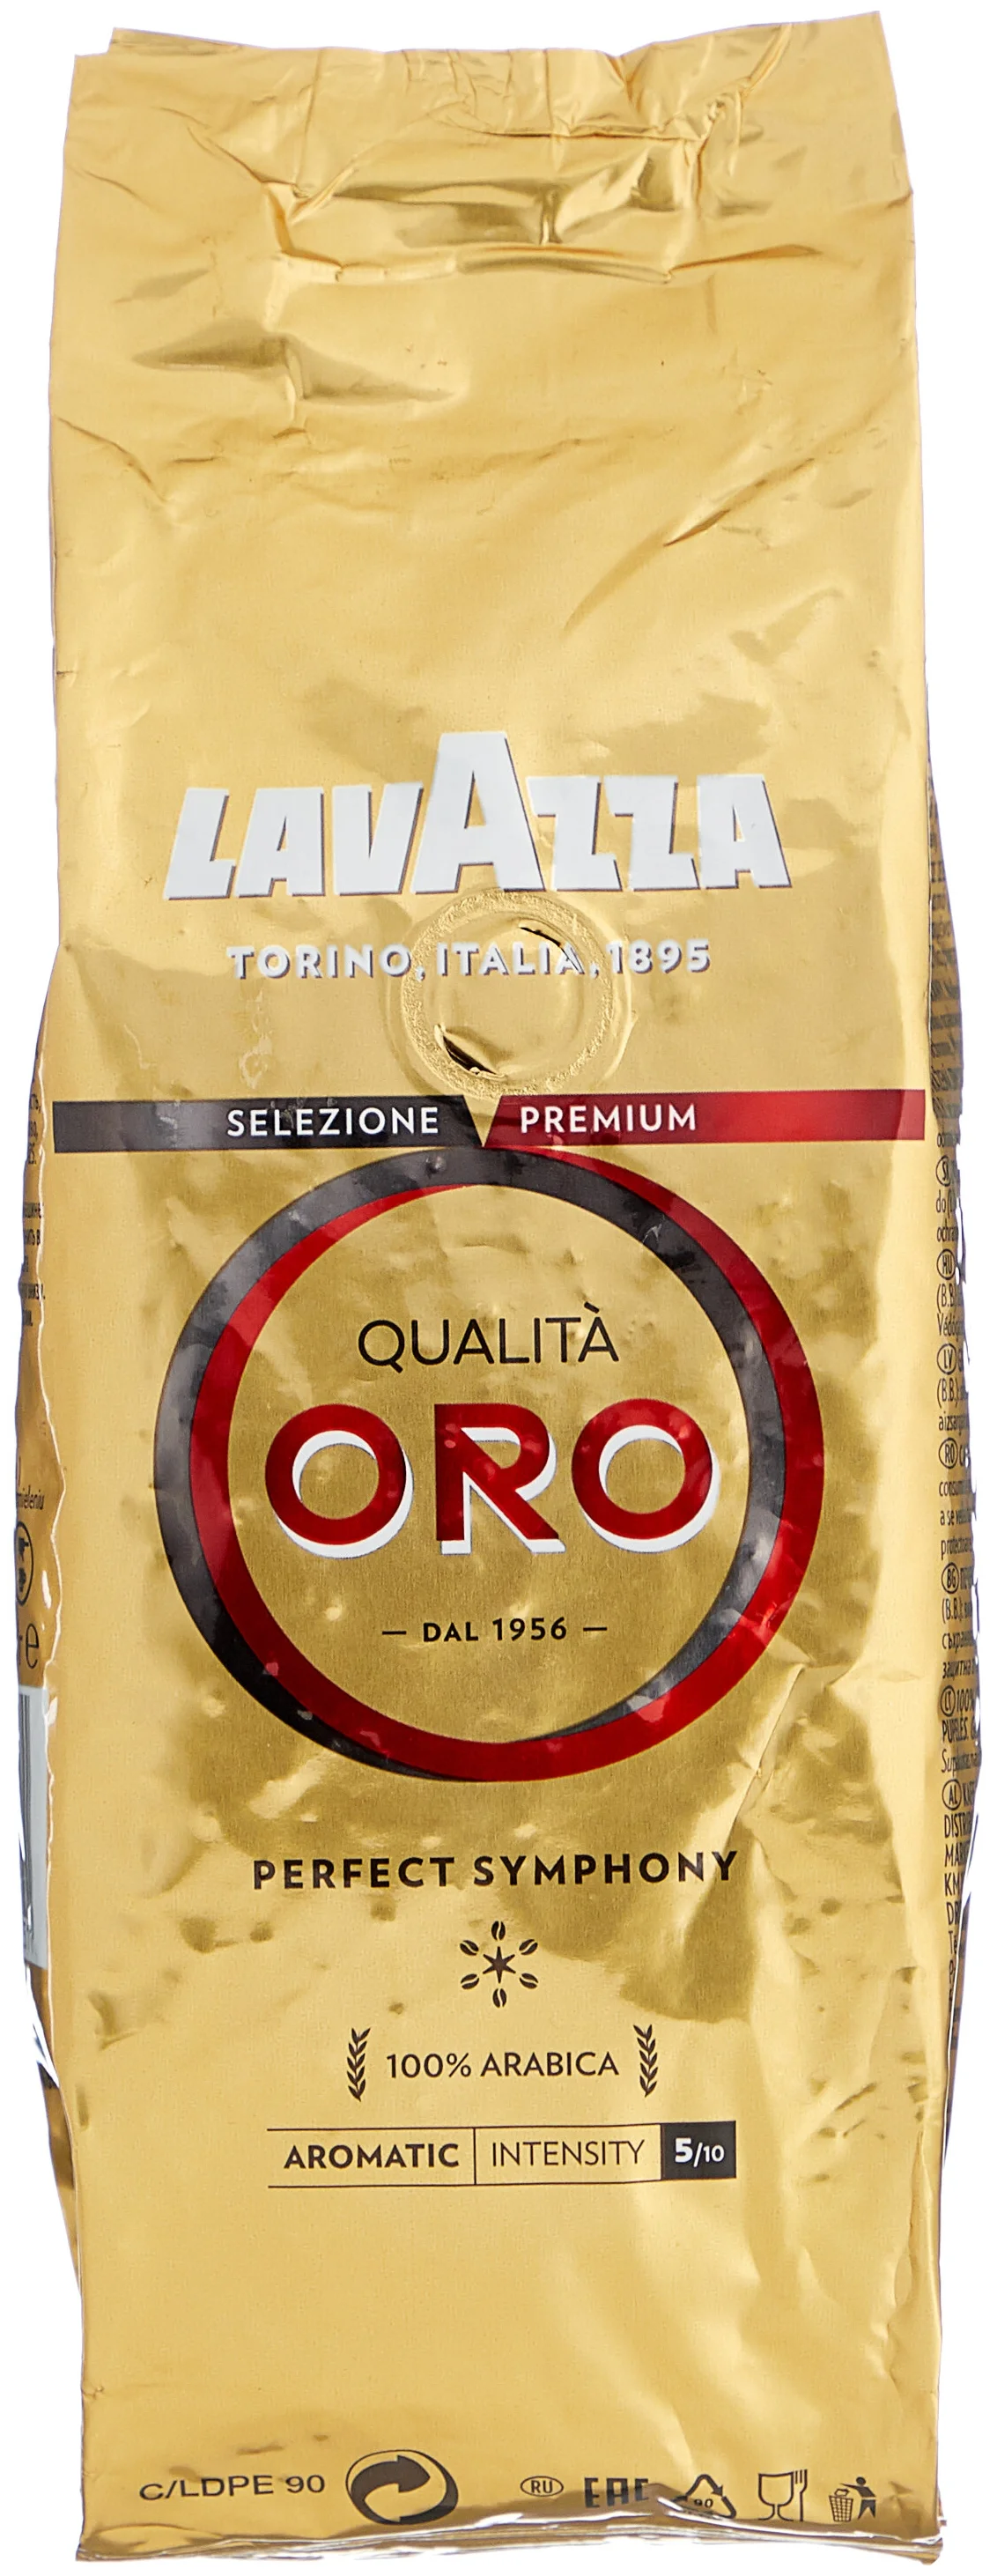  Lavazza "Qualita Oro" - cтрана произрастания: Бразилия, Гватемала, Коста Рика